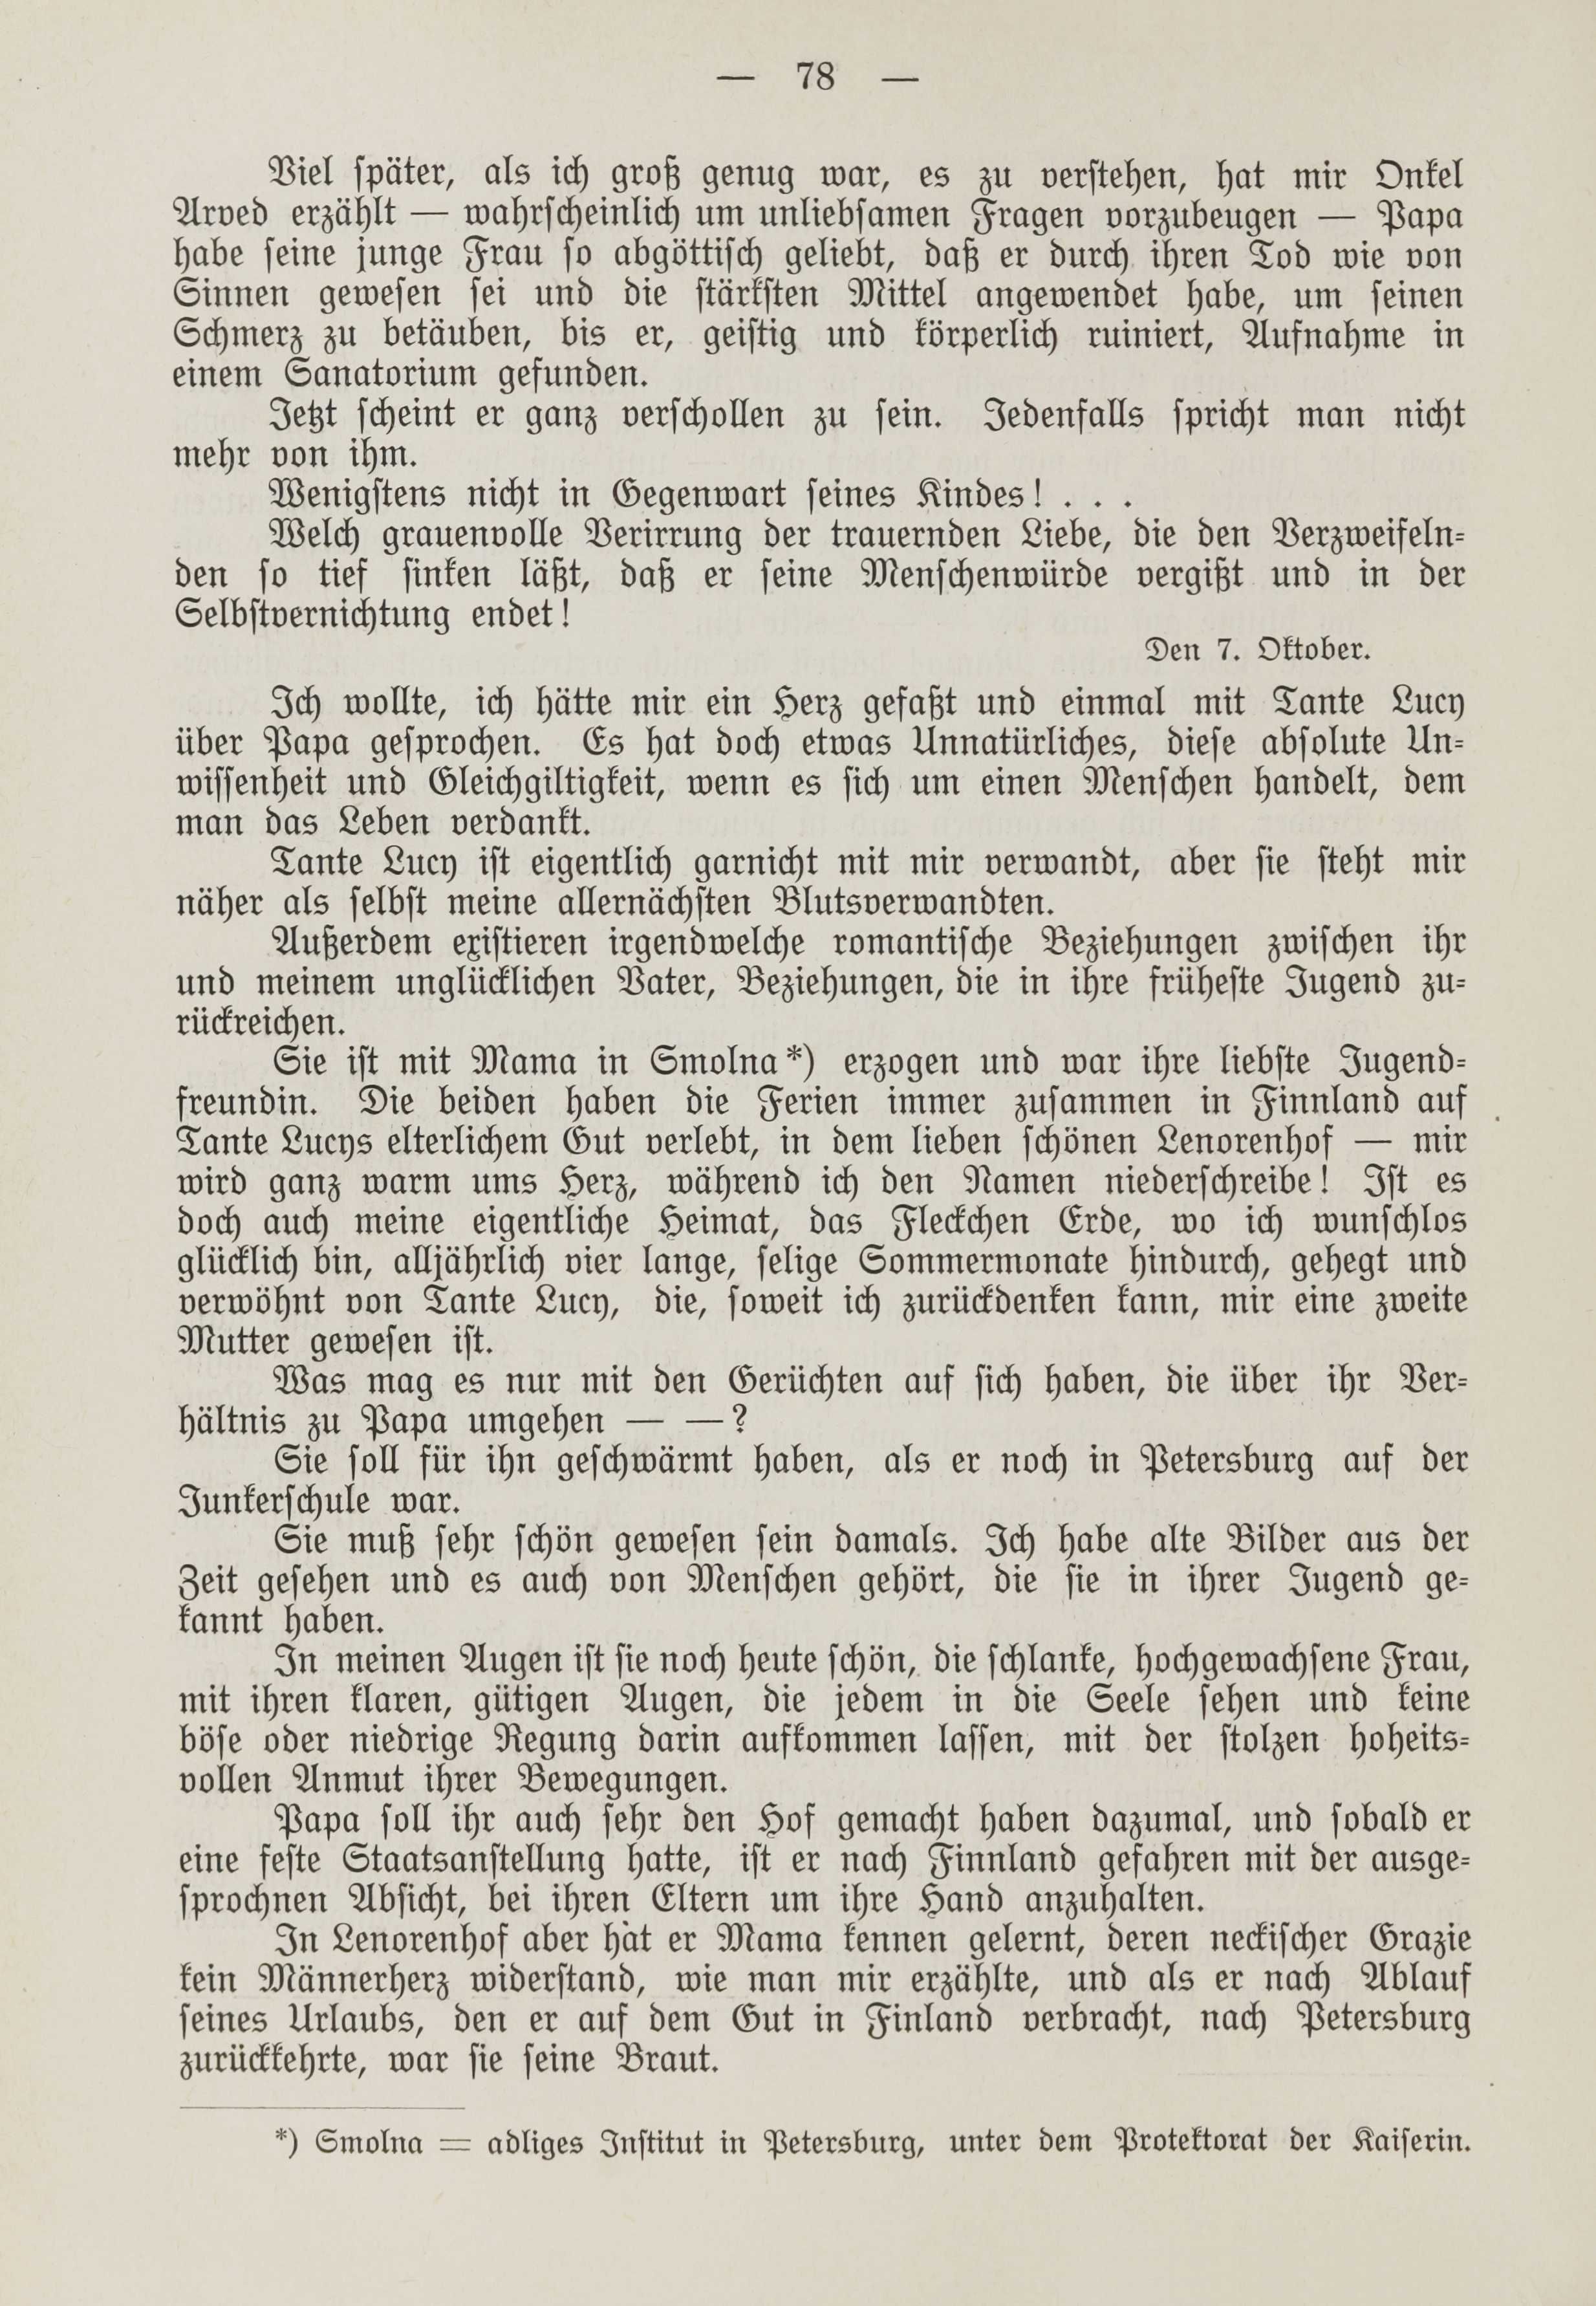 Deutsche Monatsschrift für Russland [1] (1912) | 85. (78) Haupttext